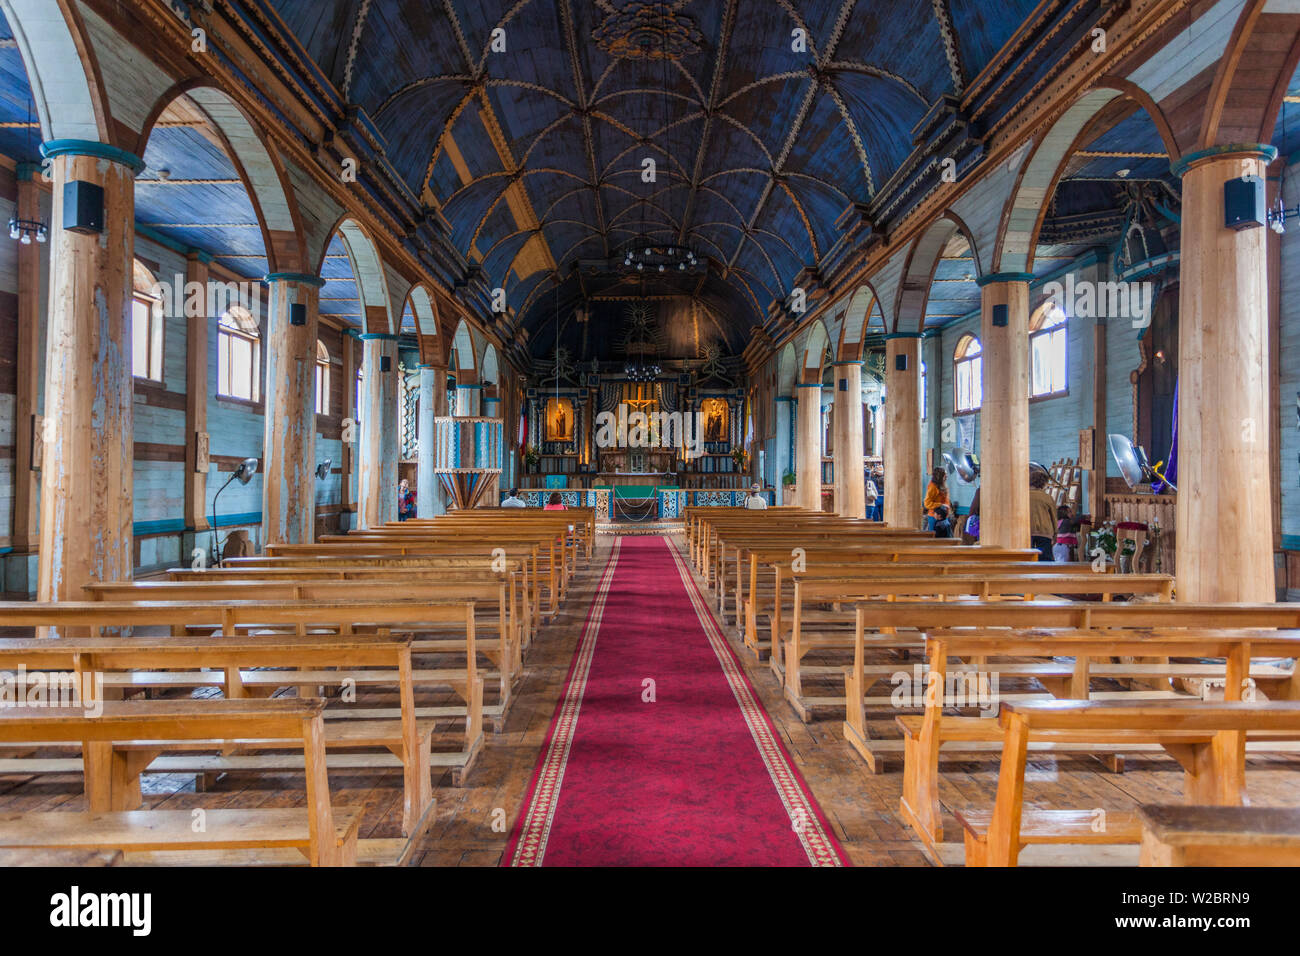 Chile, Chiloe Archipelago, Quinchao Island, Achao, Iglesia Santa Maria de Loreto church, interior Stock Photo